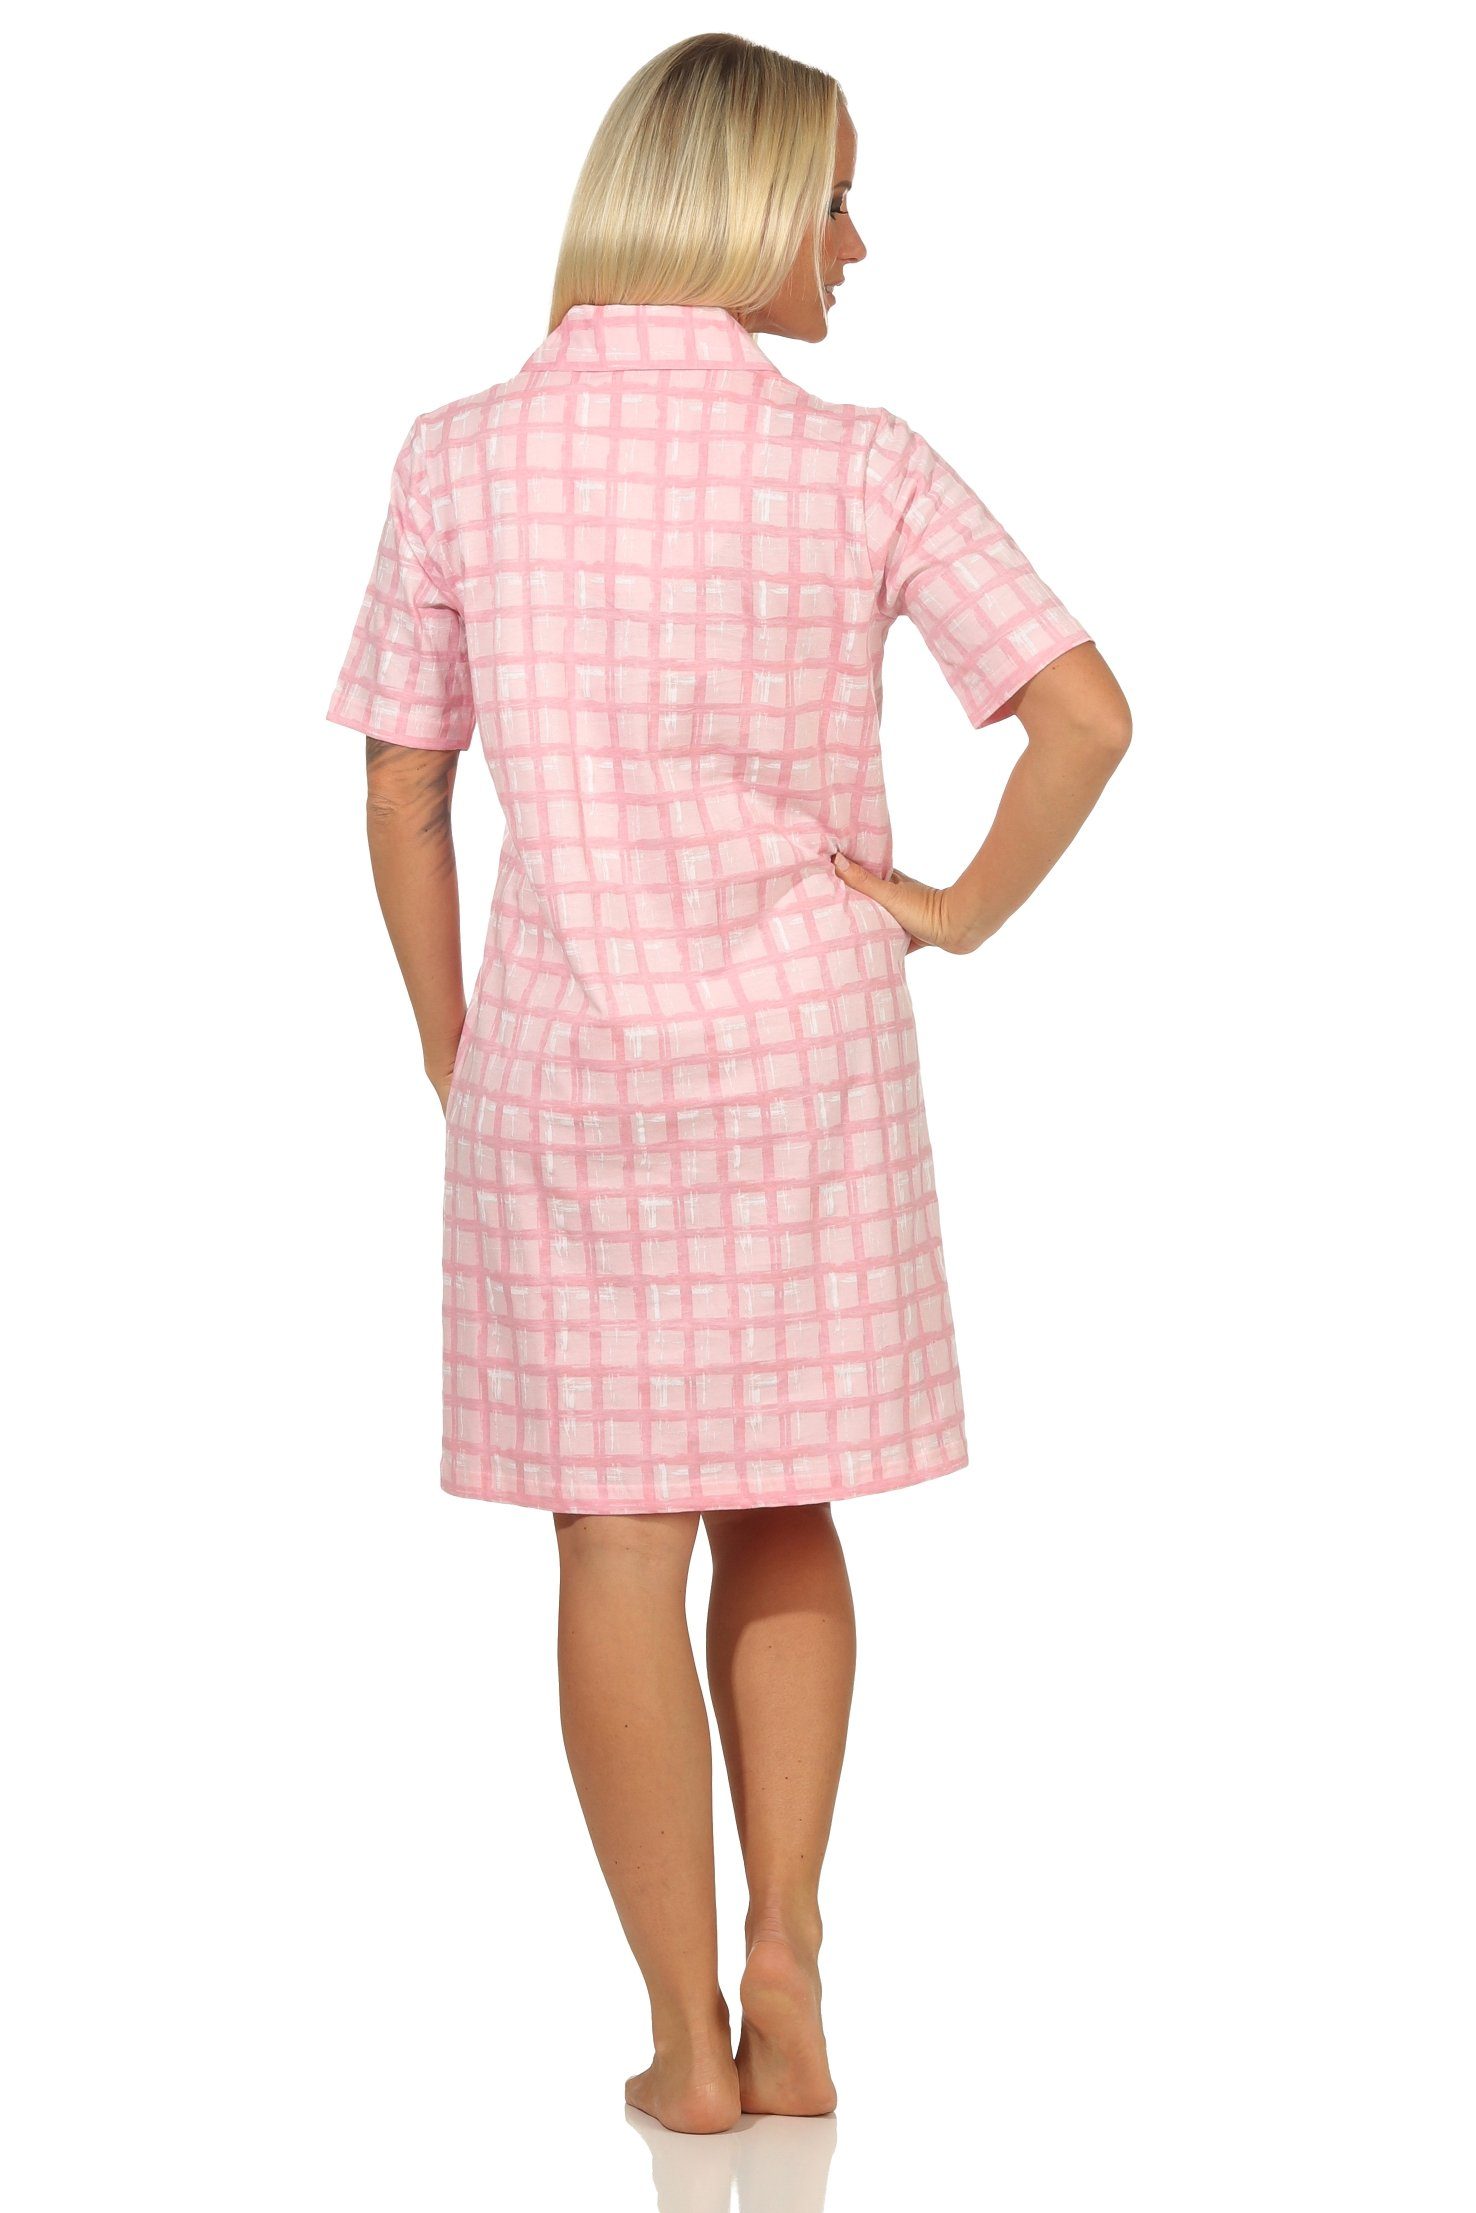 - Übergröße in komplett durchknöpfen Nachthemd Nachthemd kurzarm zum Damen Normann auch rosa